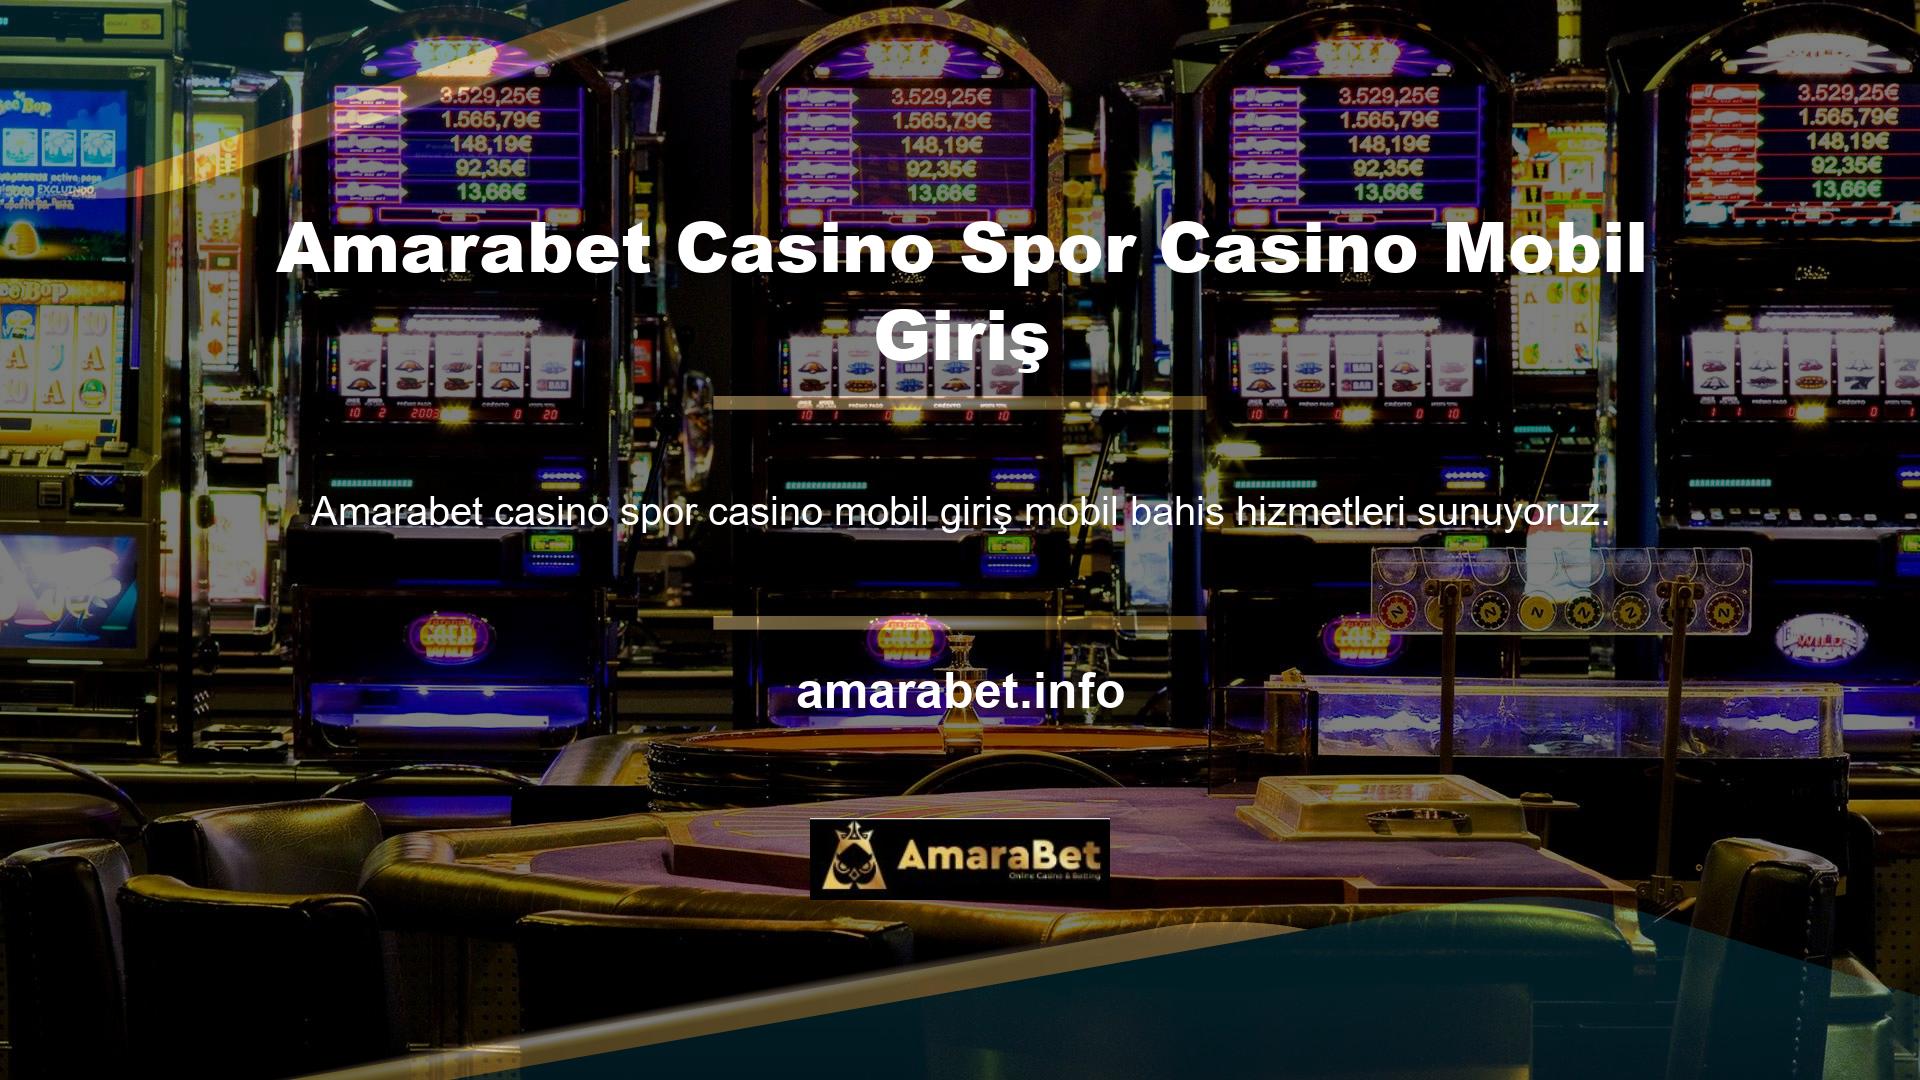 Amarabet Casino tüm akıllı cihazlarda kusursuz bir şekilde çalışmaktadır